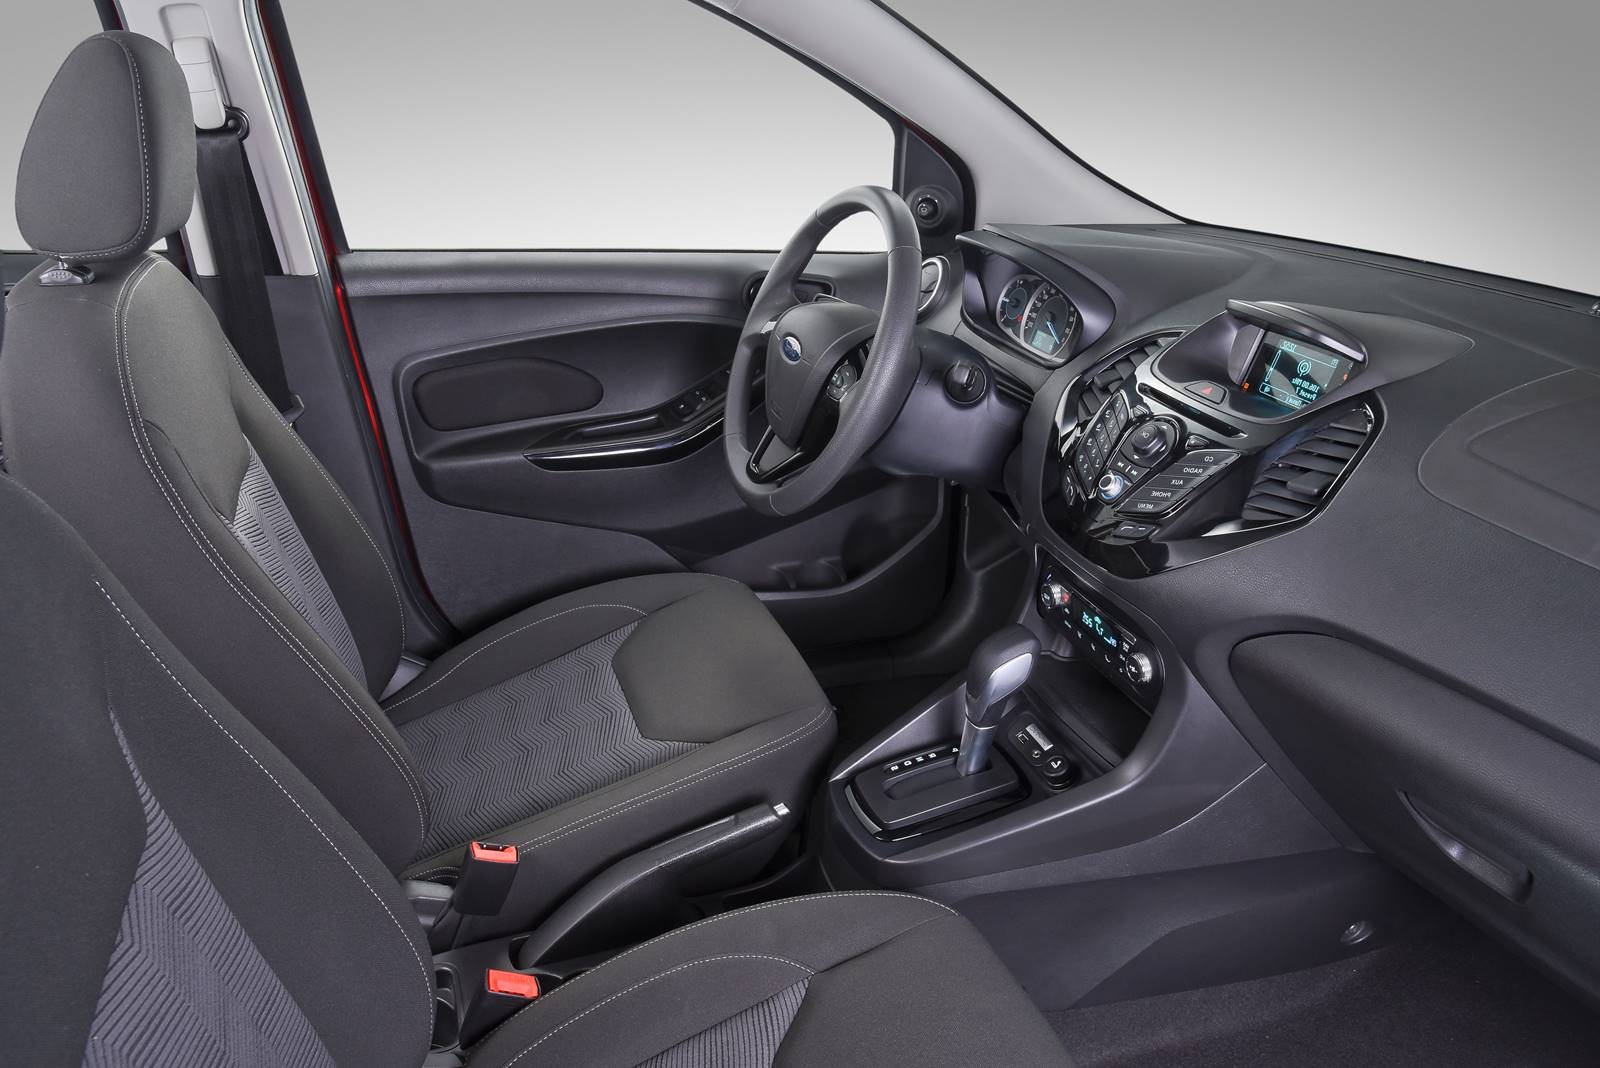 Ford Ka 2019 é anunciado e ganha câmbio automático; preços chegam